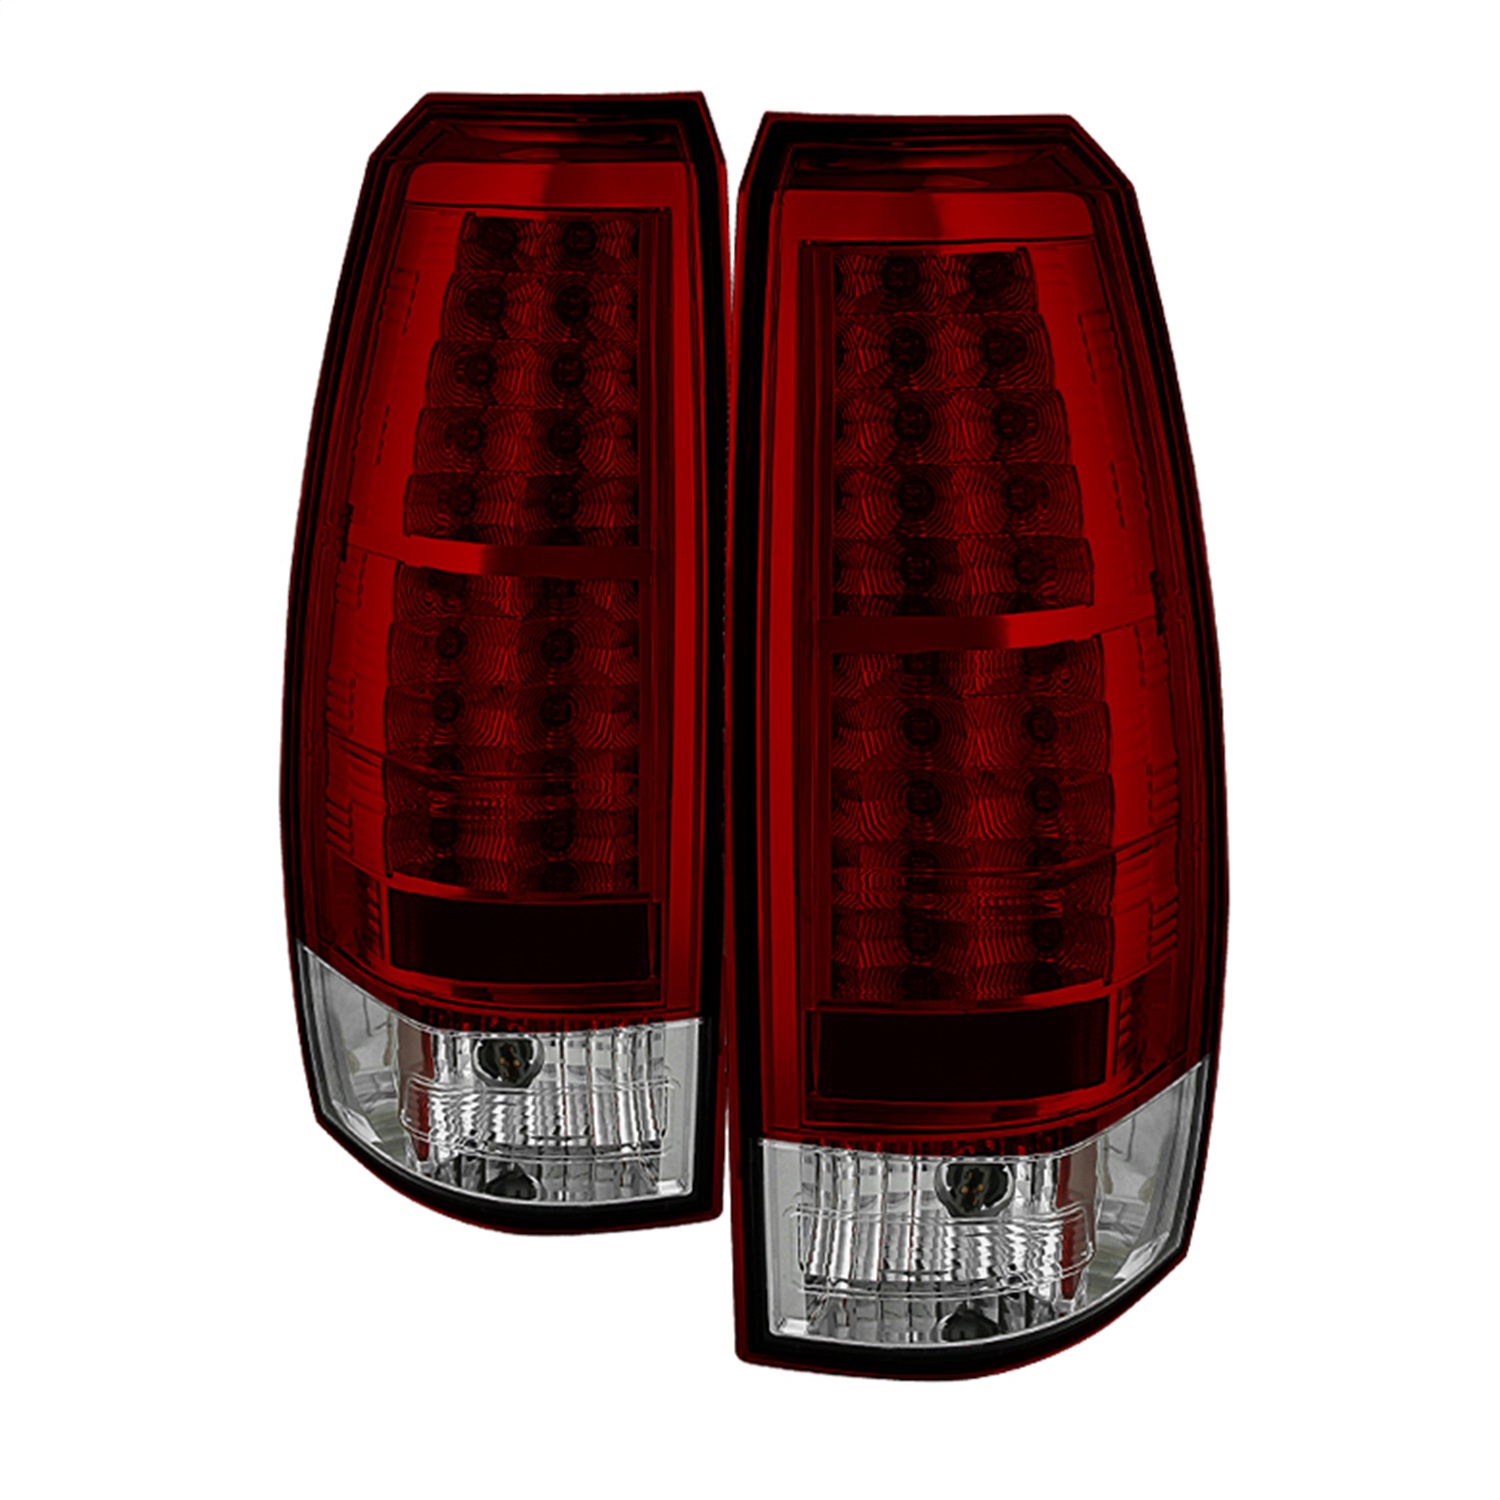 Spyder Auto 5032478 LED Tail Lights Fits 07-13 Avalanche